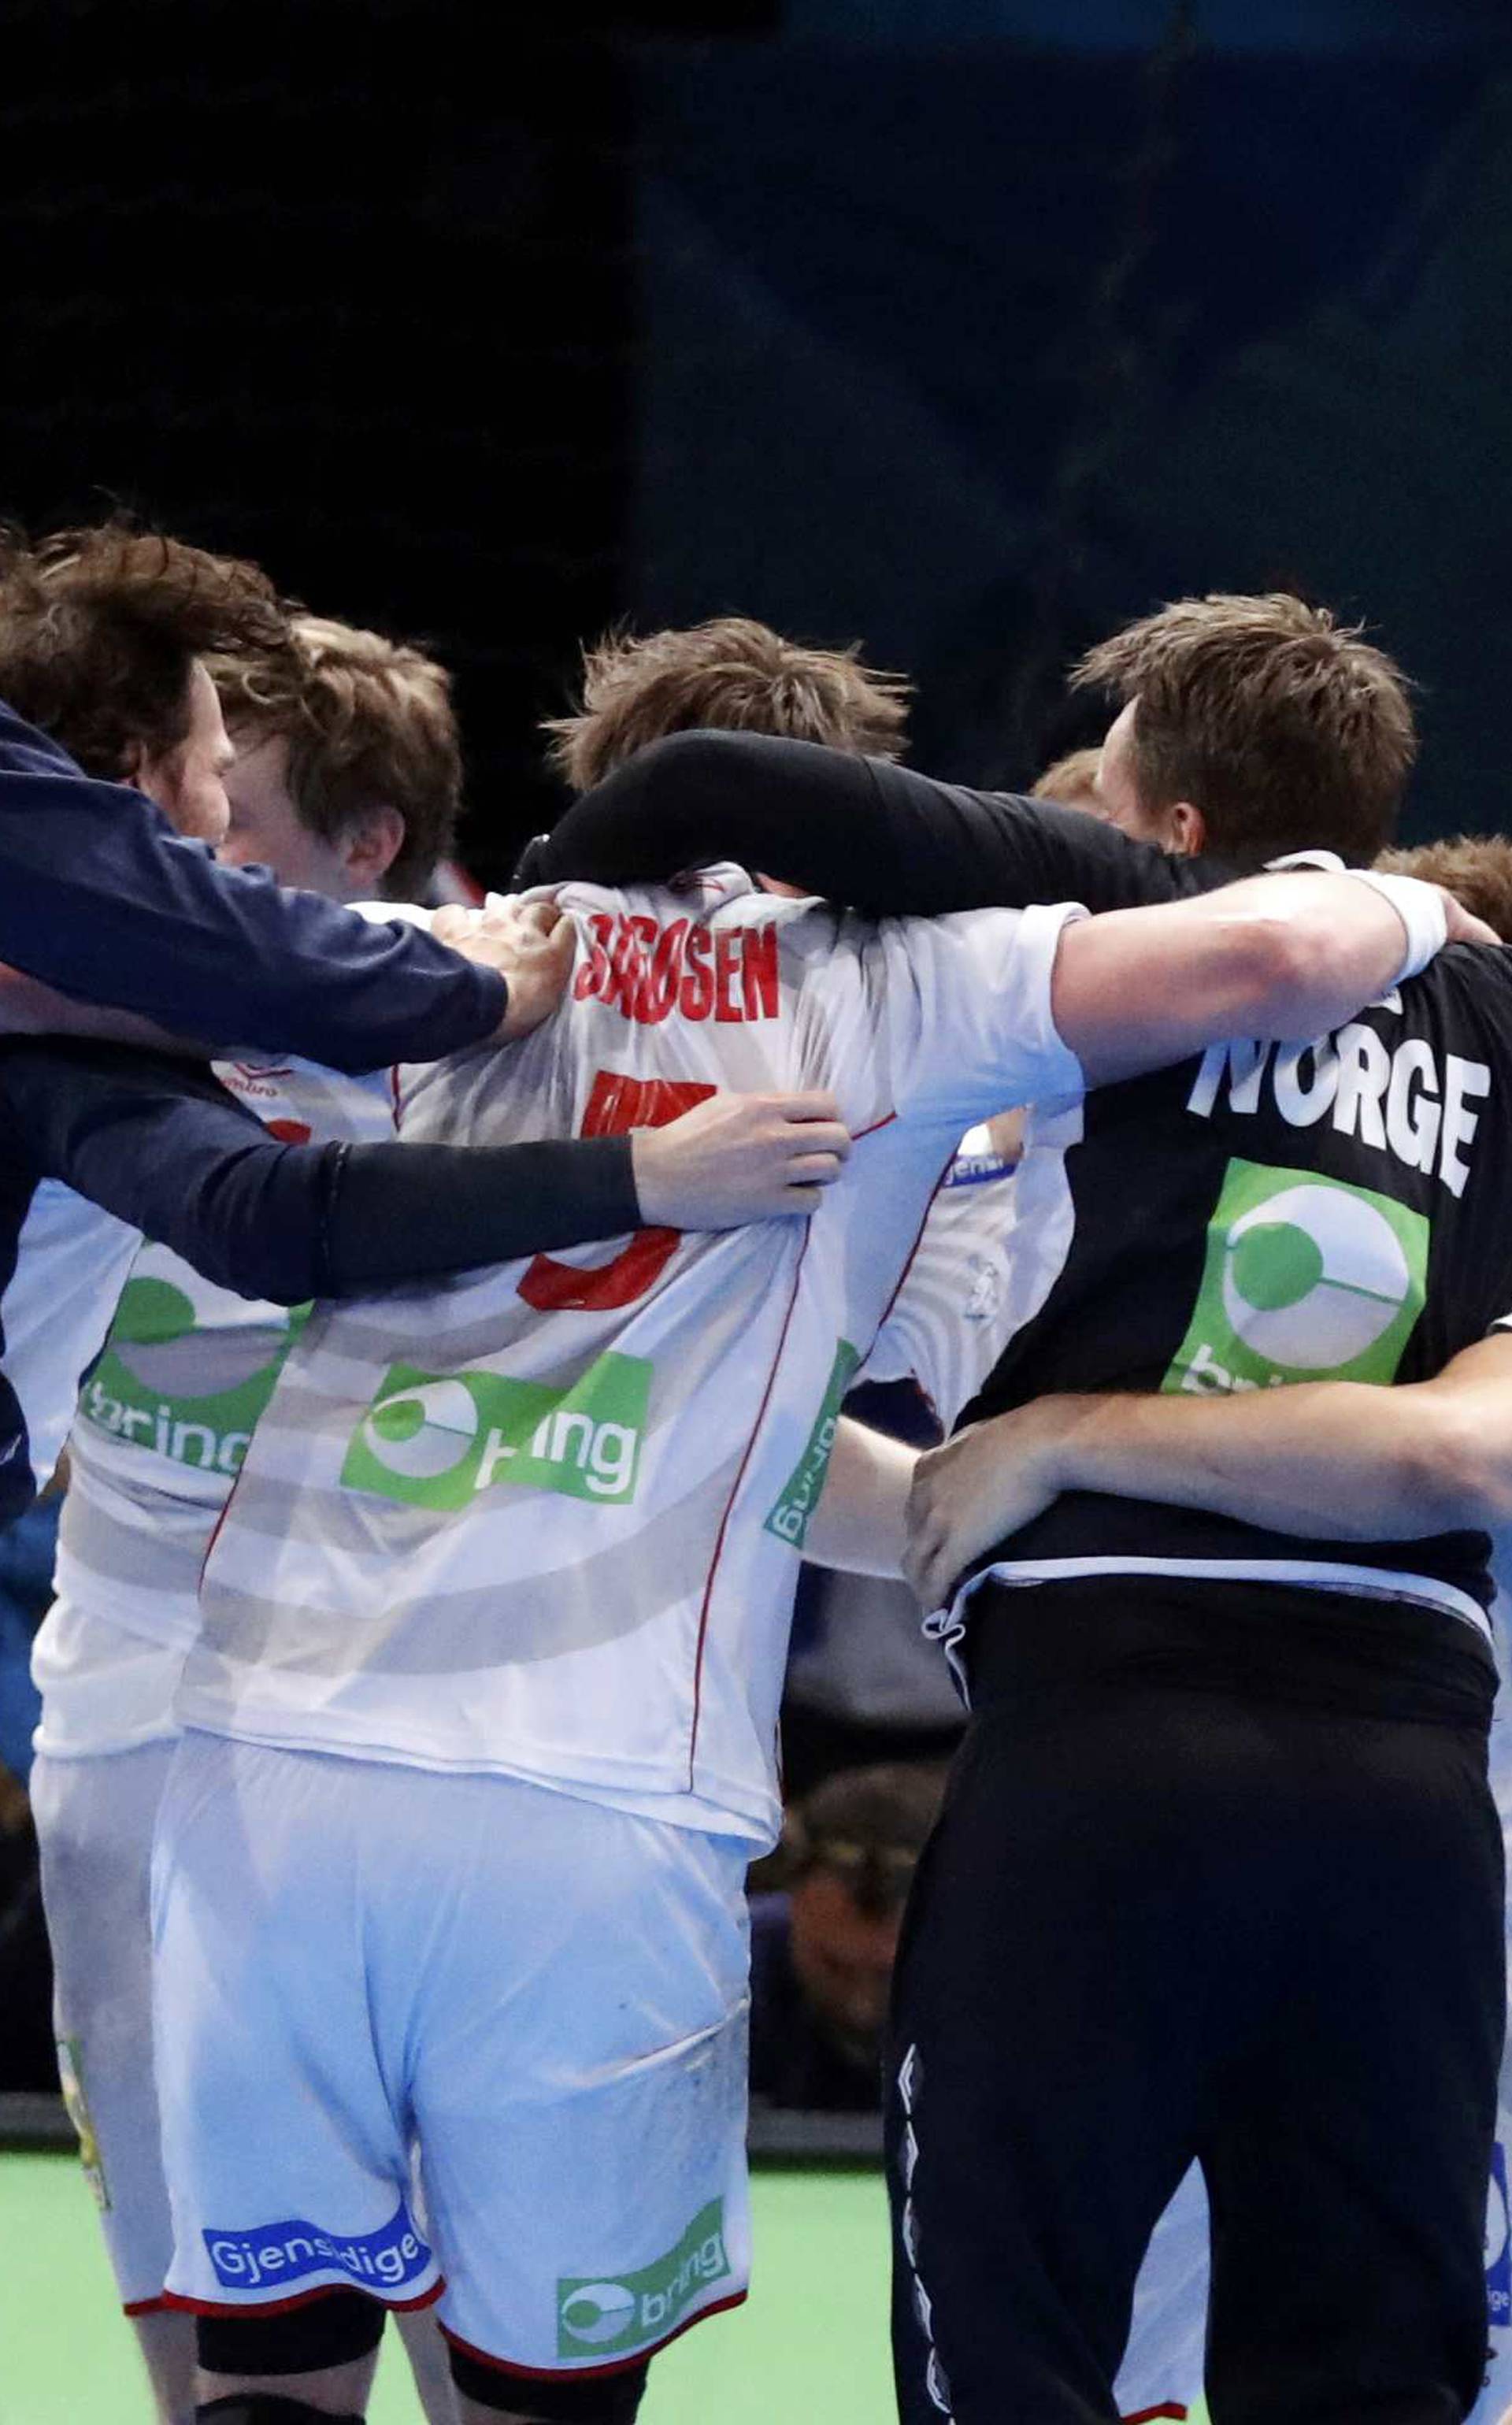 Men's Handball - Croatia v Norway - 2017 Men's World Championship Semi-Finals